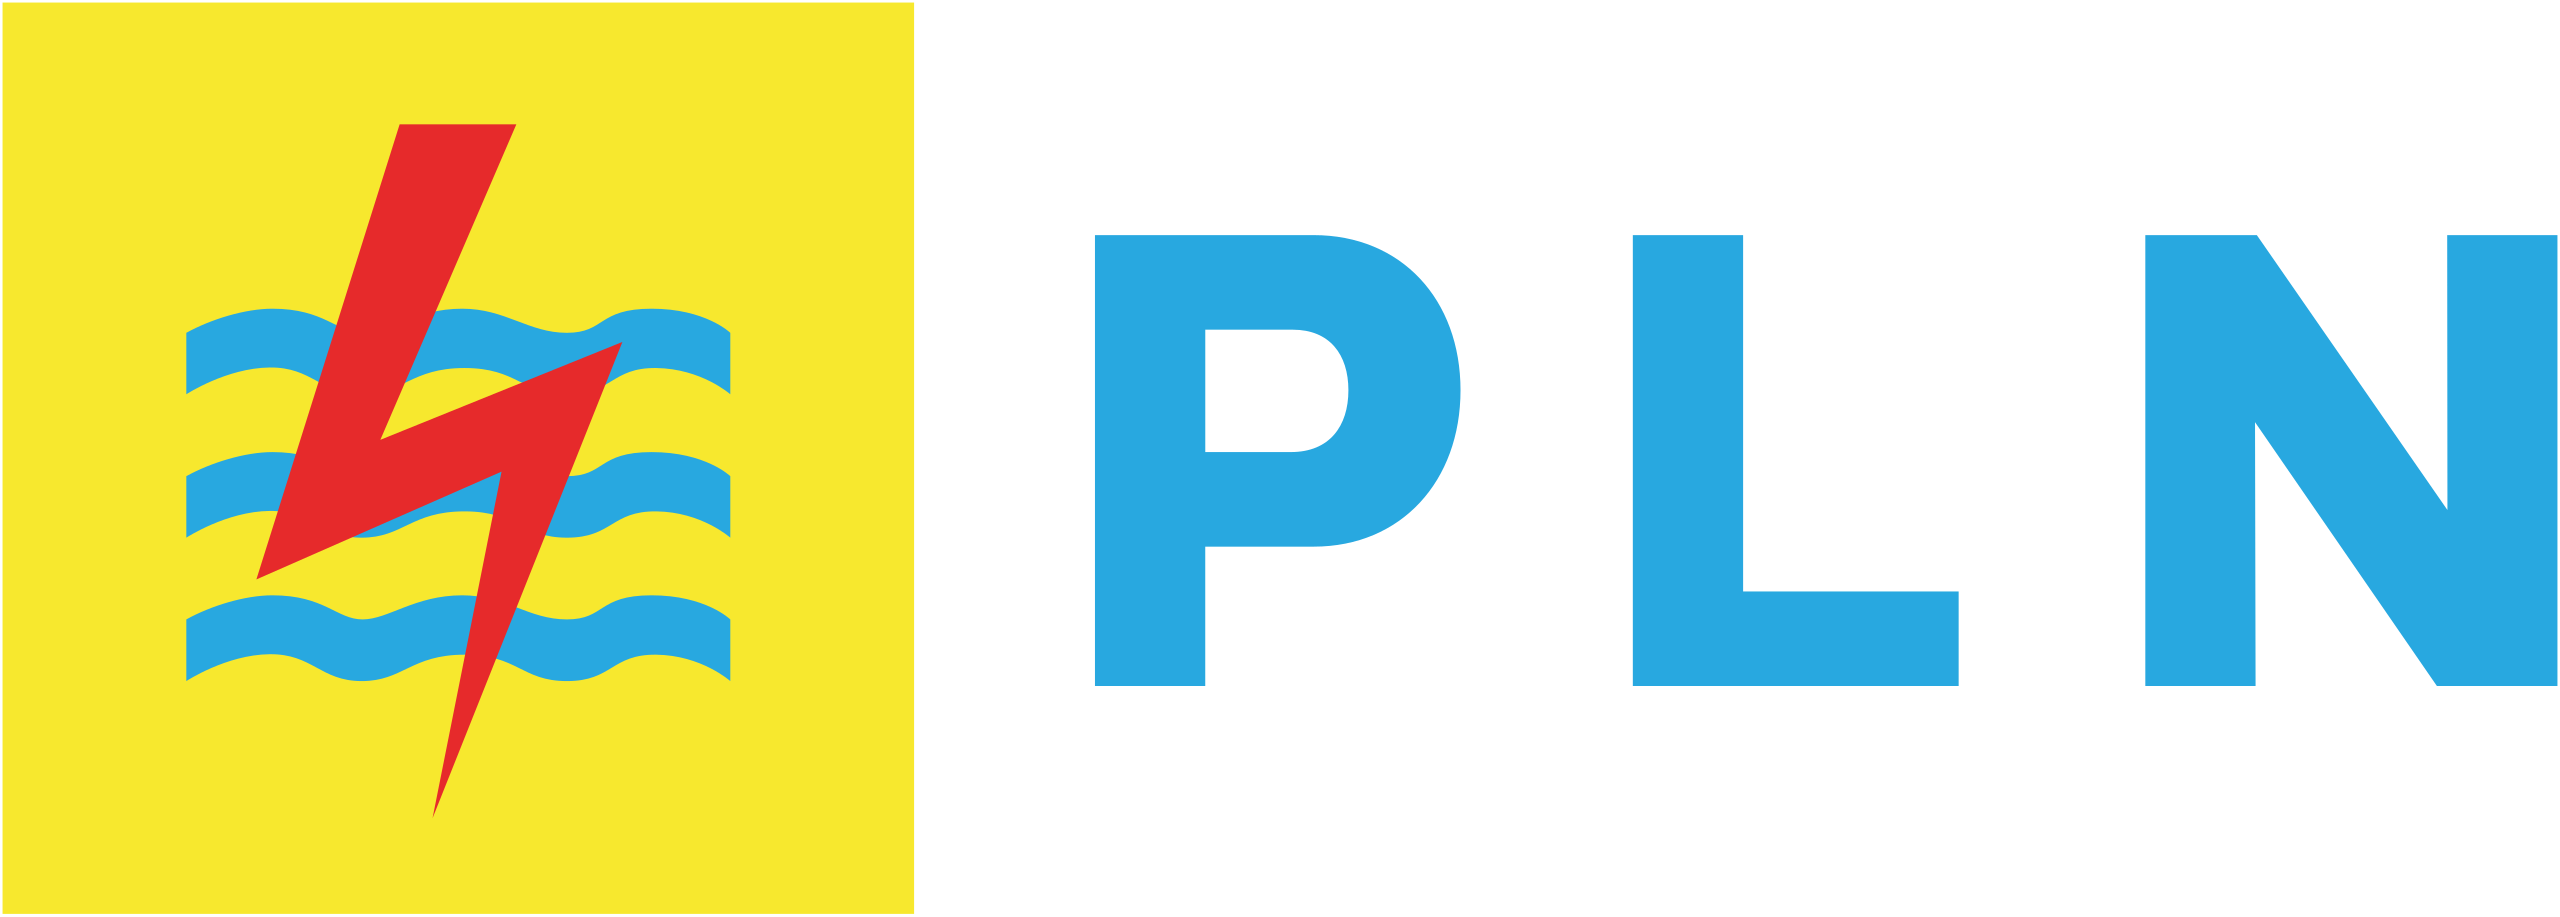 Logo_PLN 1